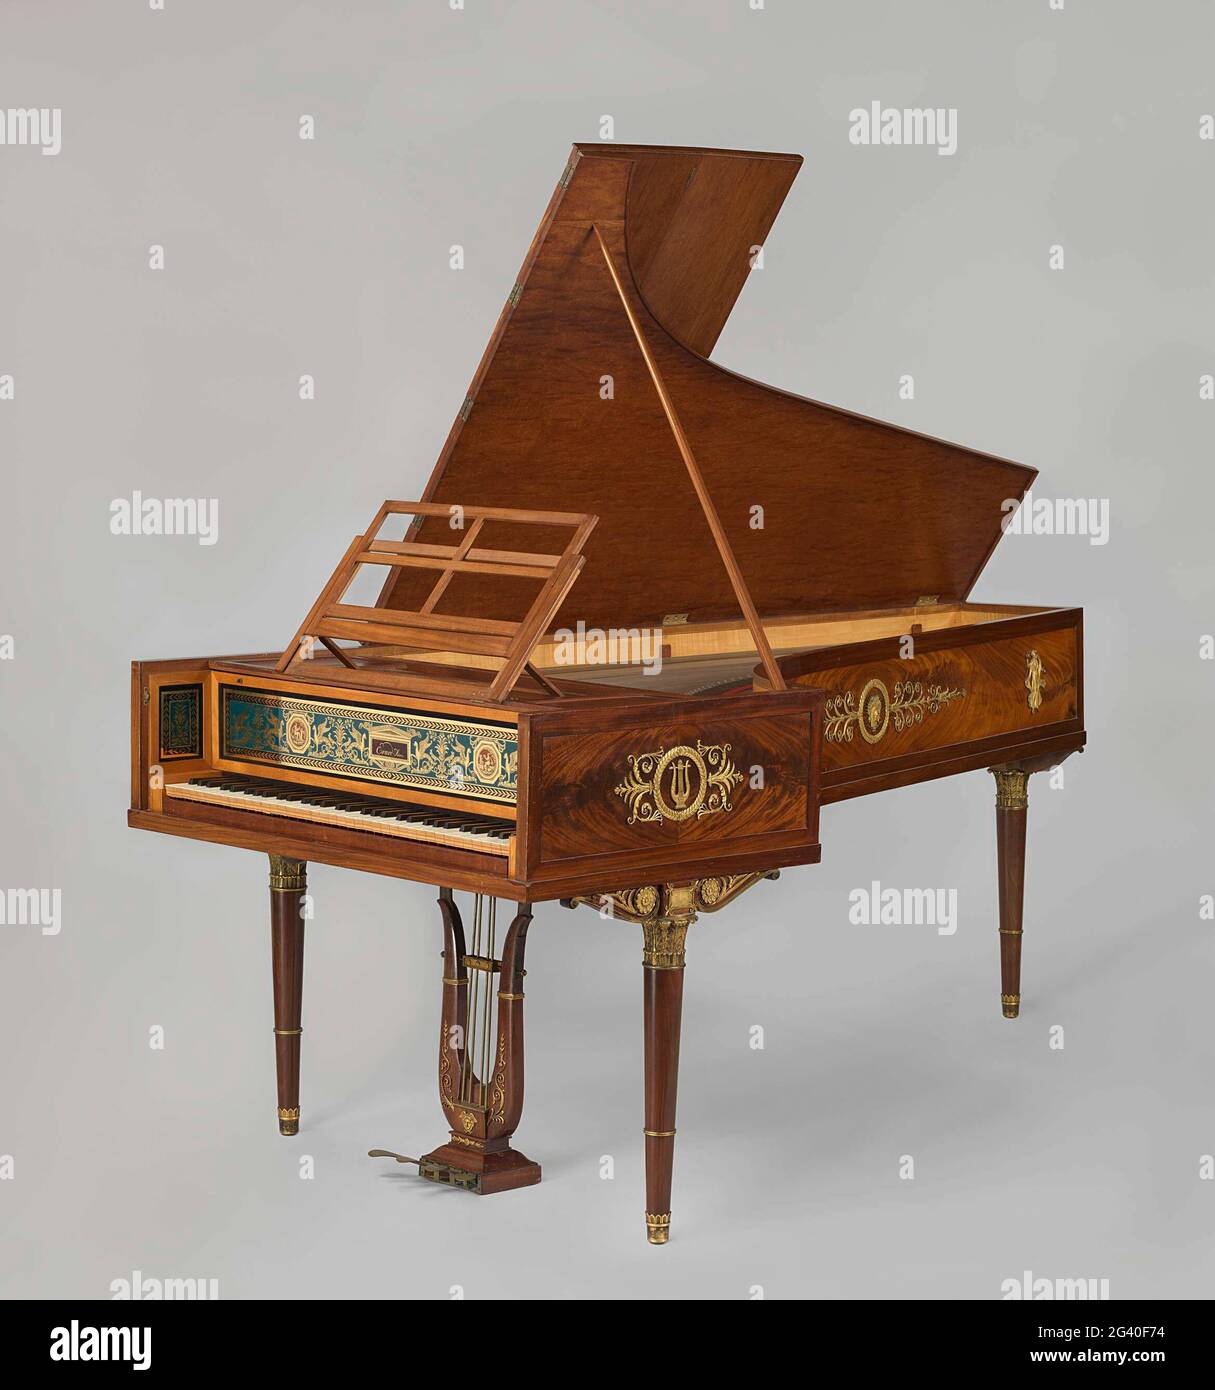 Pianoforte. El rey Luis Napoleón ordenó este suntuoso piano a su esposa  musical Hortense, que también tocó el arpa y el clavecín. Estaba destinado  a la sala de conciertos del Palacio Real